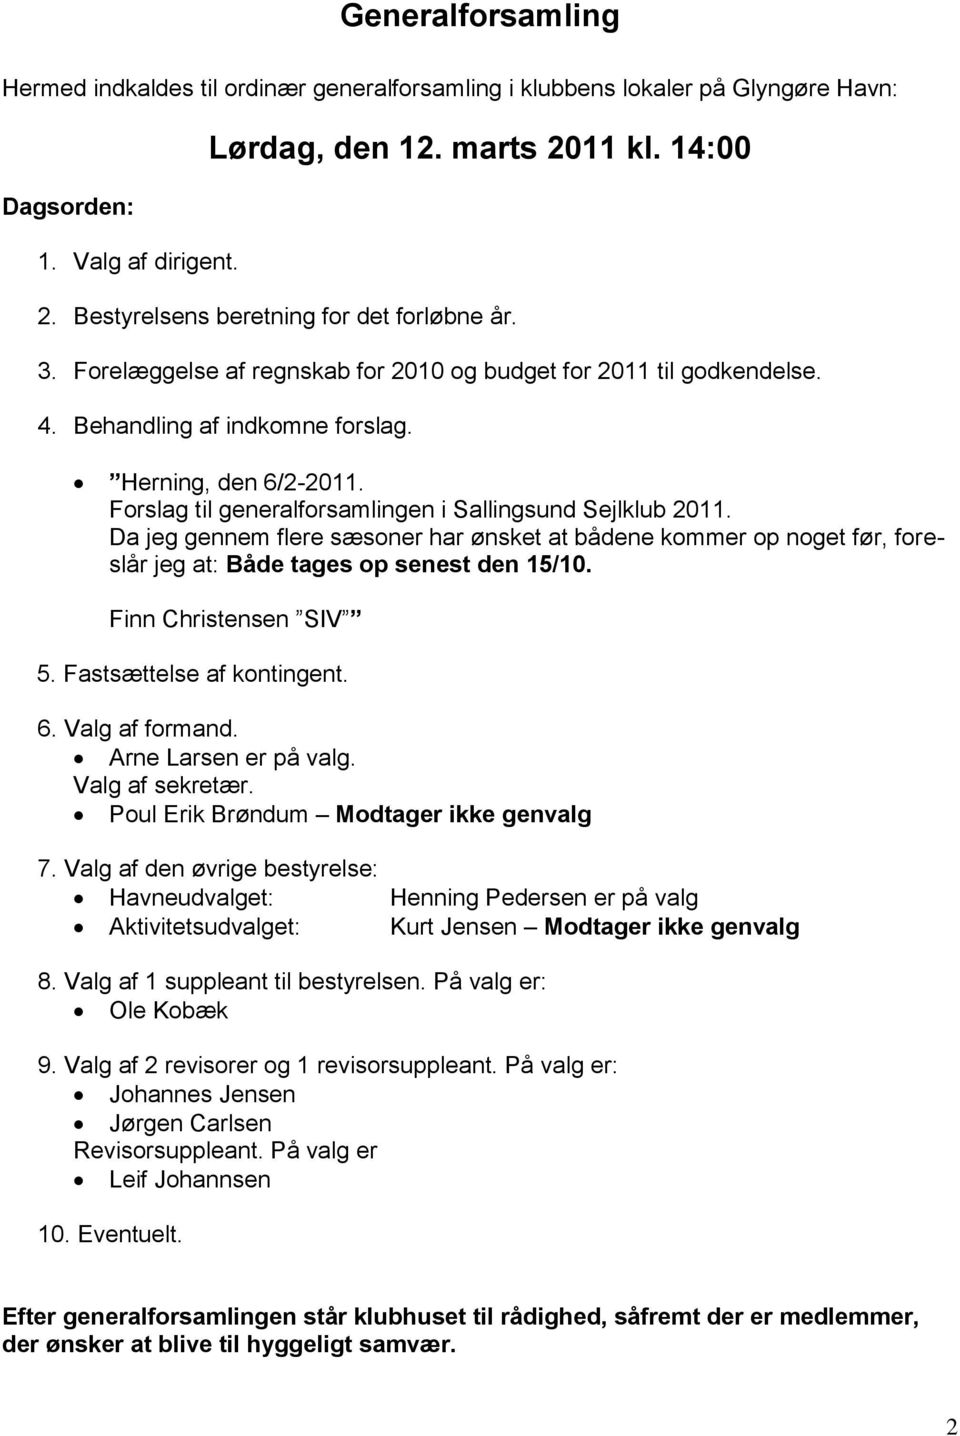 Forslag til generalforsamlingen i Sallingsund Sejlklub 2011. Da jeg gennem flere sæsoner har ønsket at bådene kommer op noget før, foreslår jeg at: Både tages op senest den 15/10.